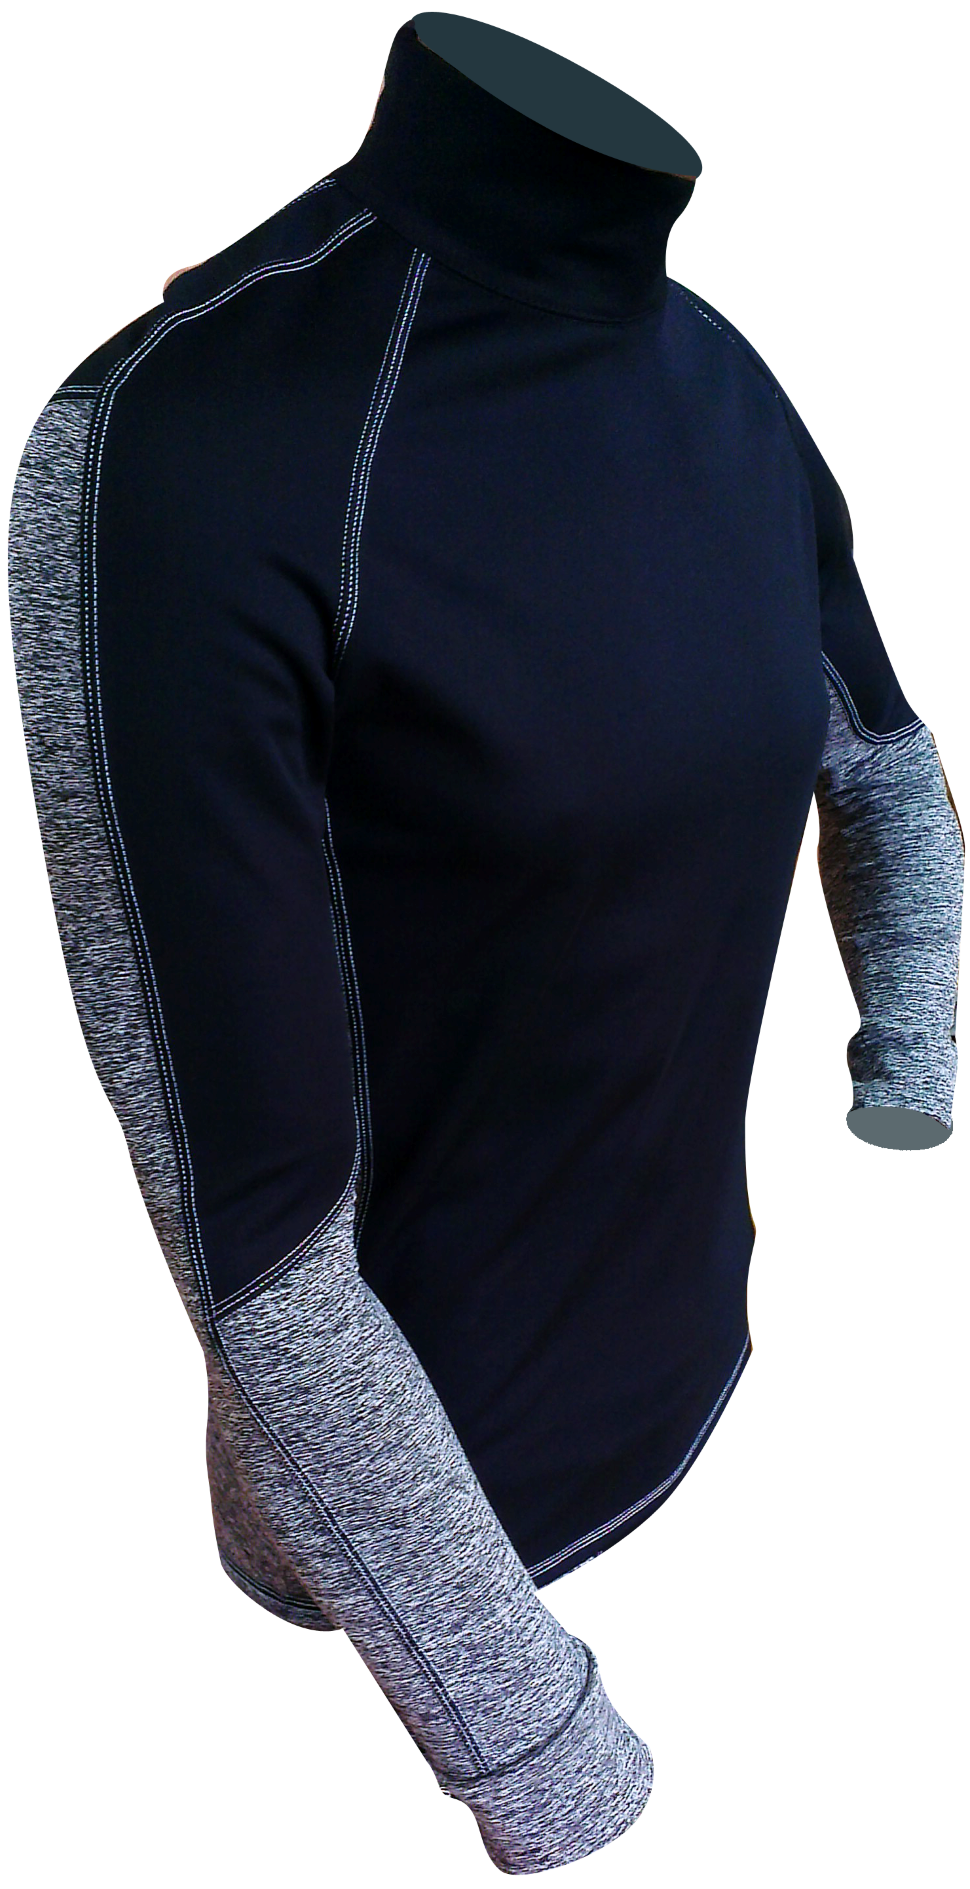 Термофутболка женская Starks Warm Long shirt Extreme черный серый